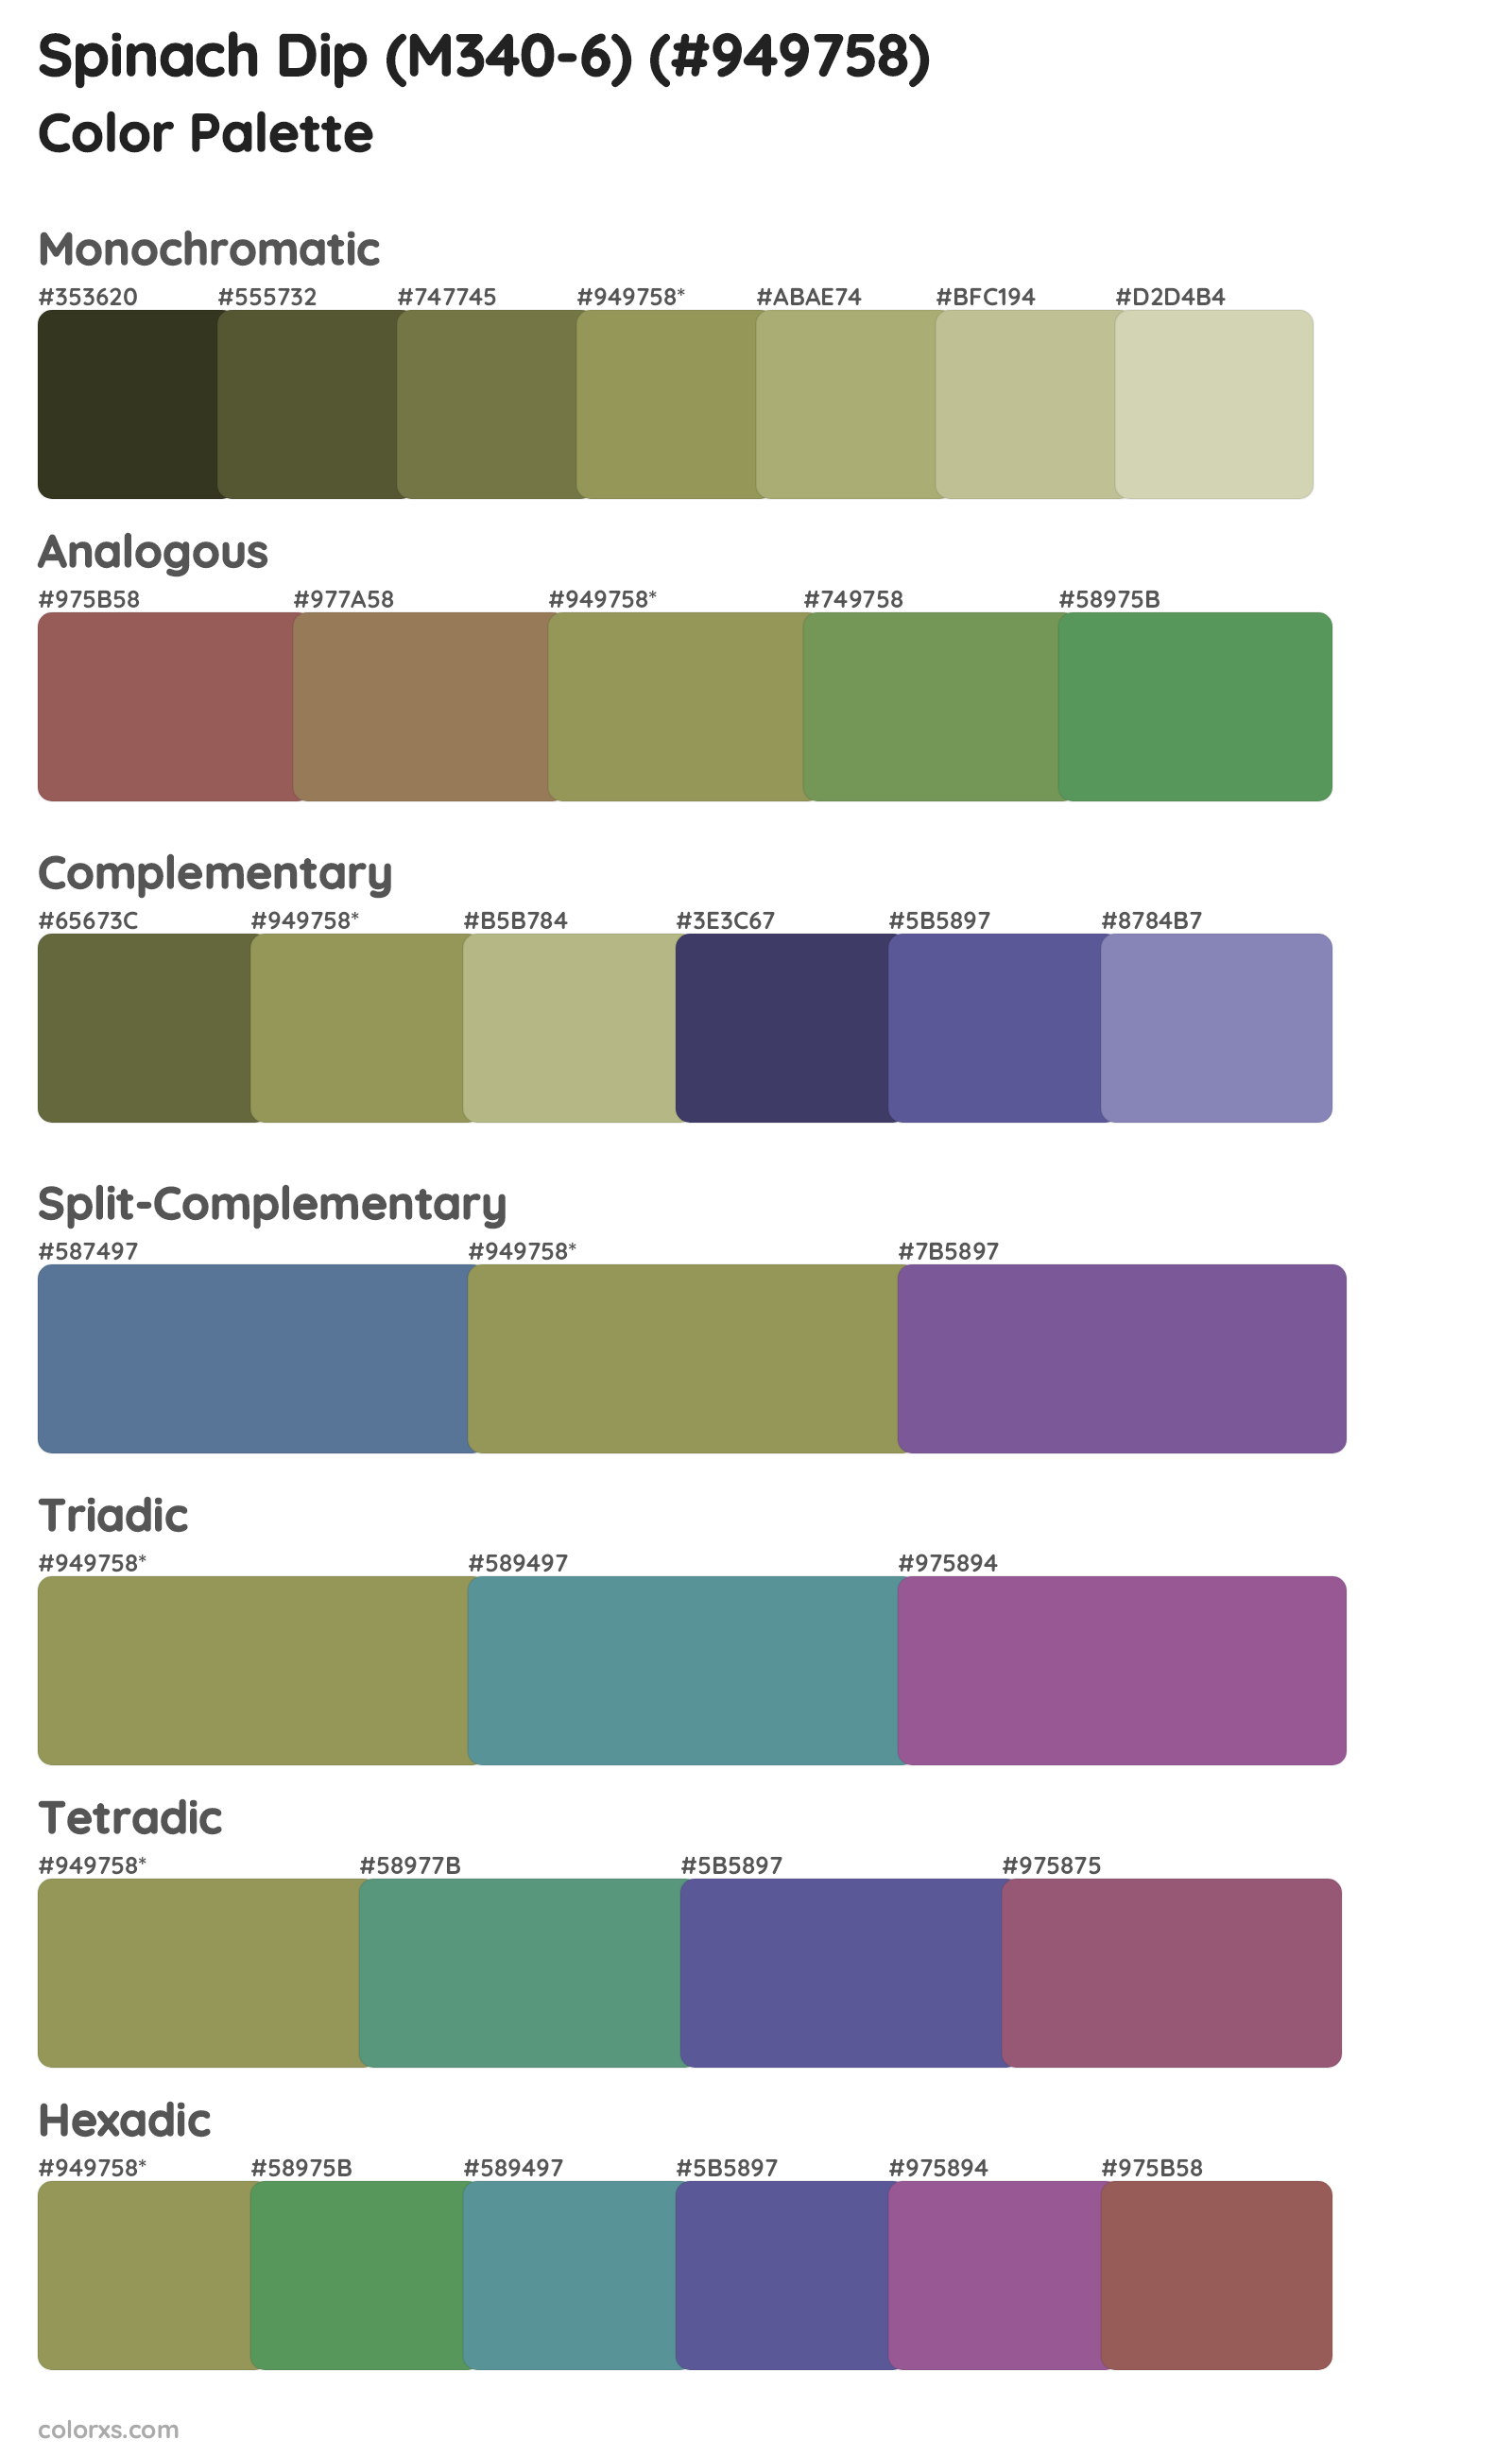 Spinach Dip (M340-6) Color Scheme Palettes